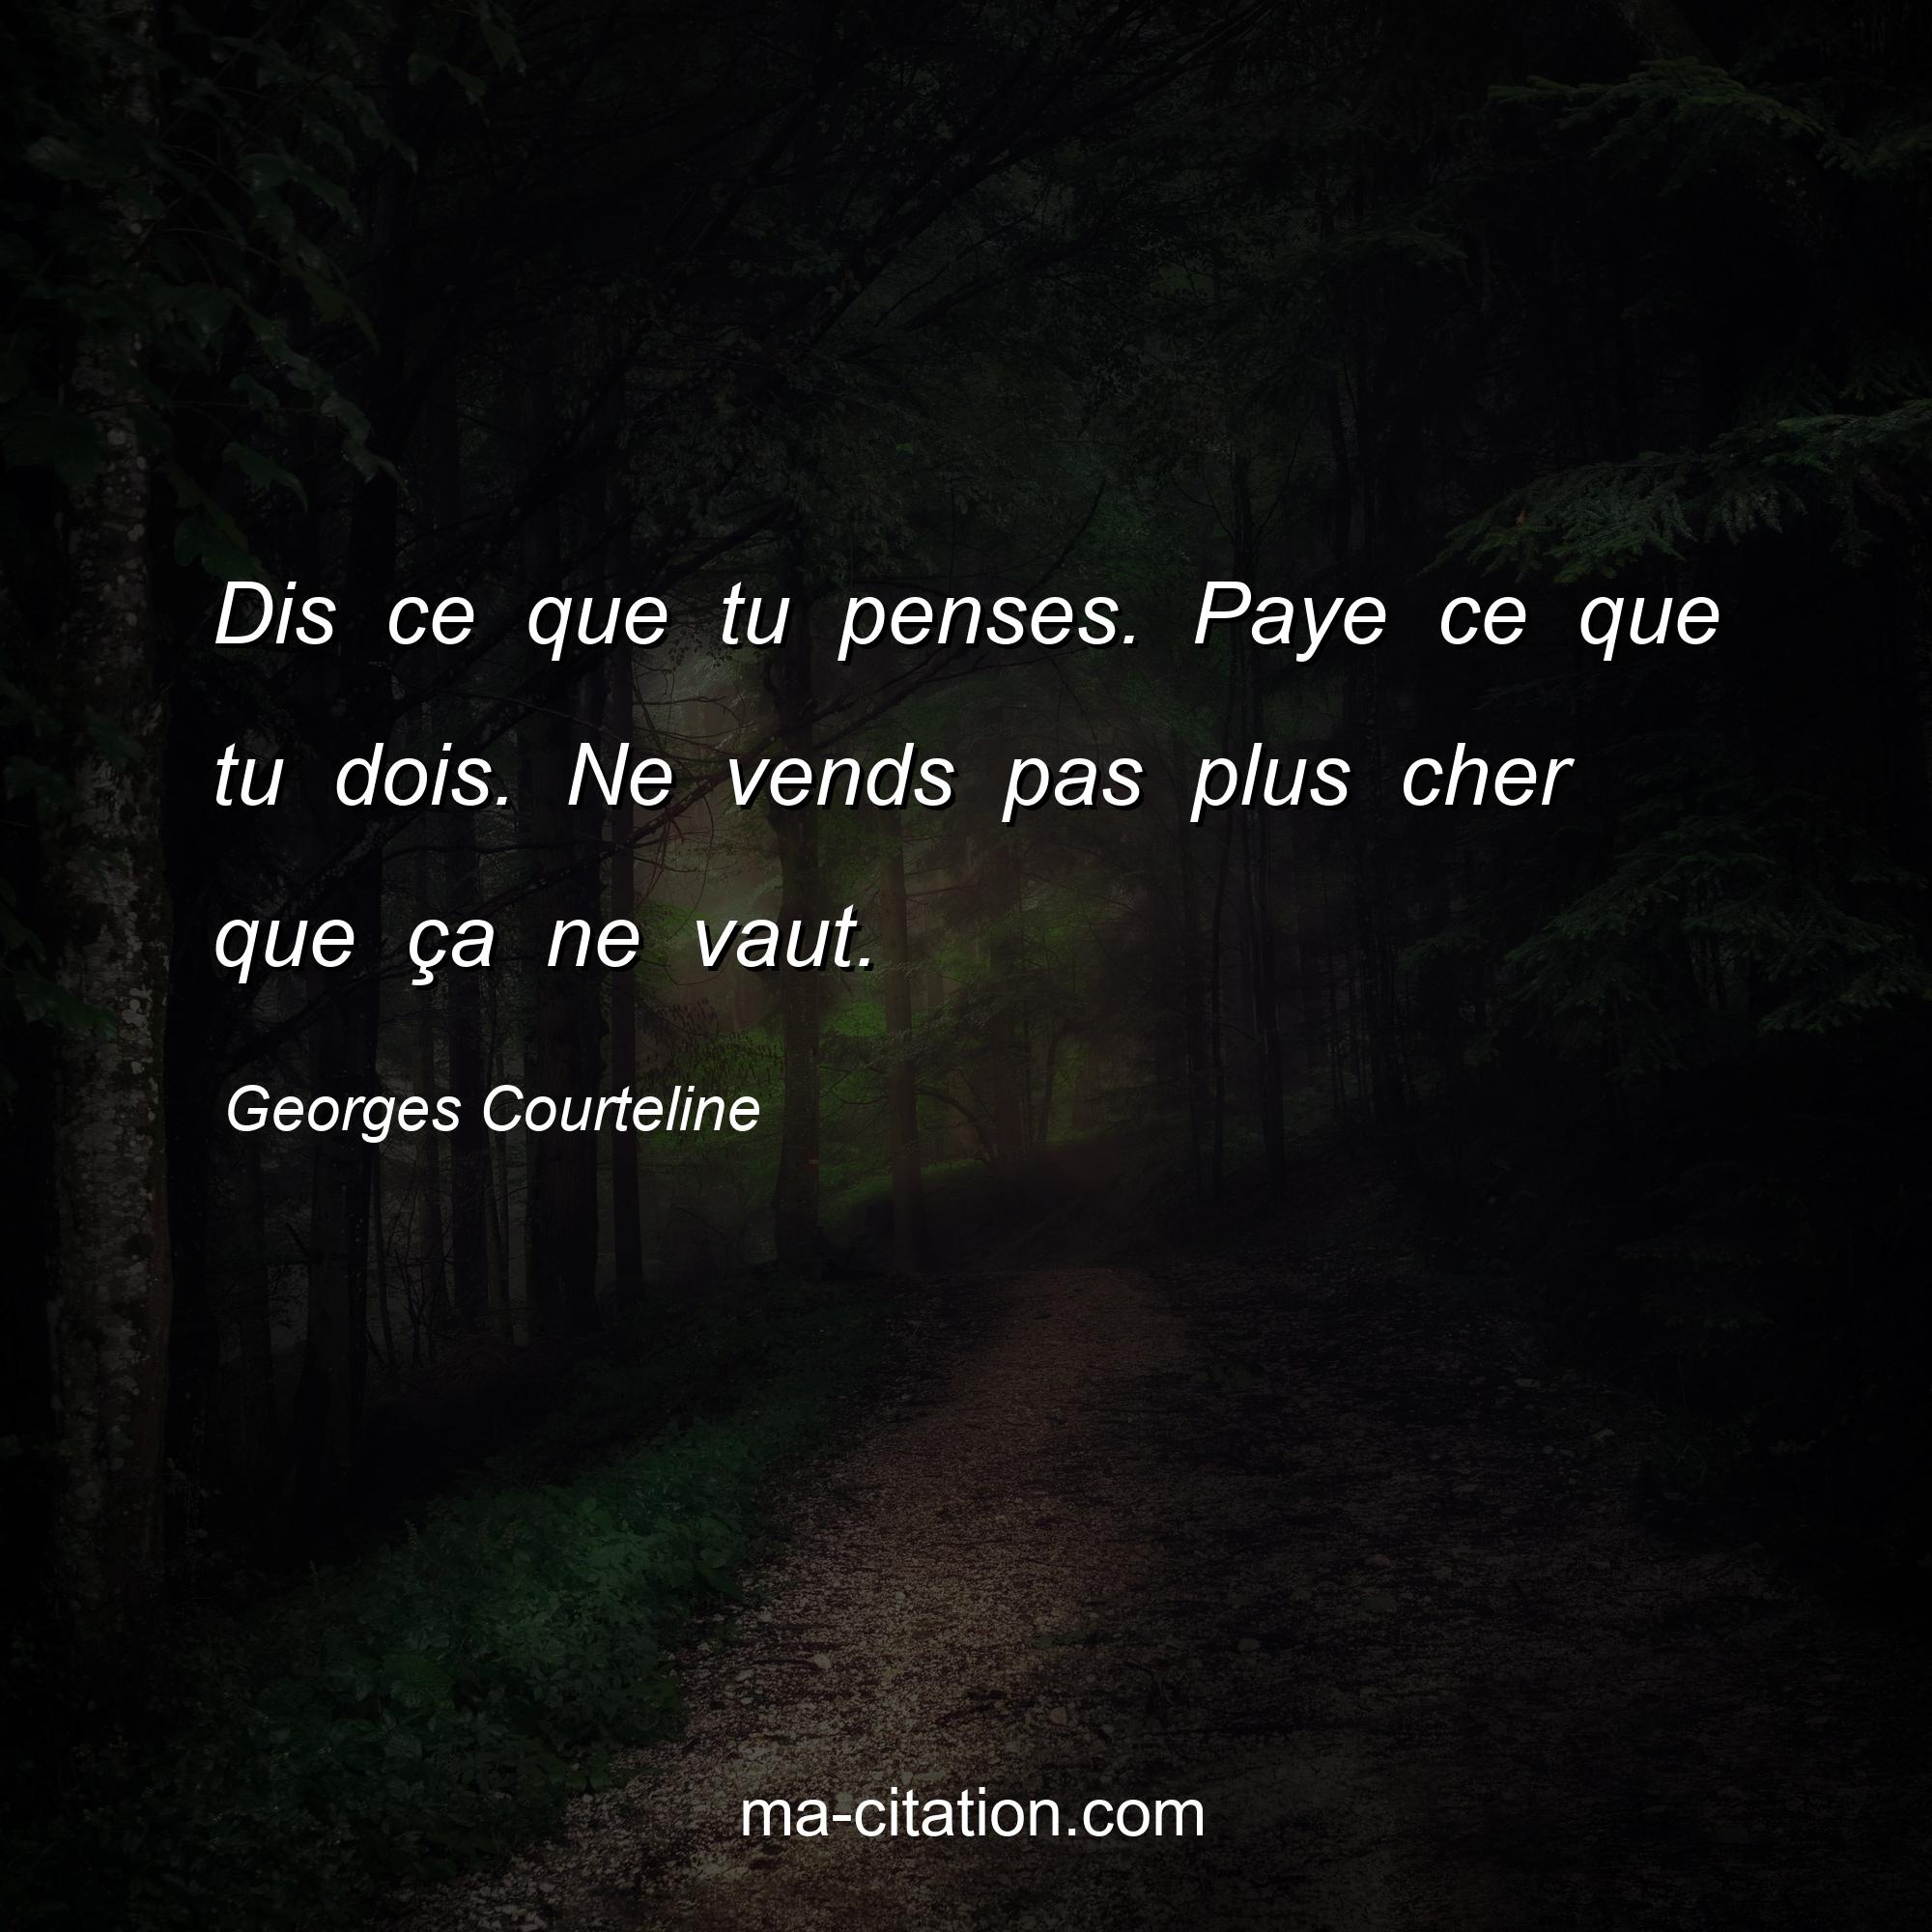 Georges Courteline : Dis ce que tu penses. Paye ce que tu dois. Ne vends pas plus cher que ça ne vaut.